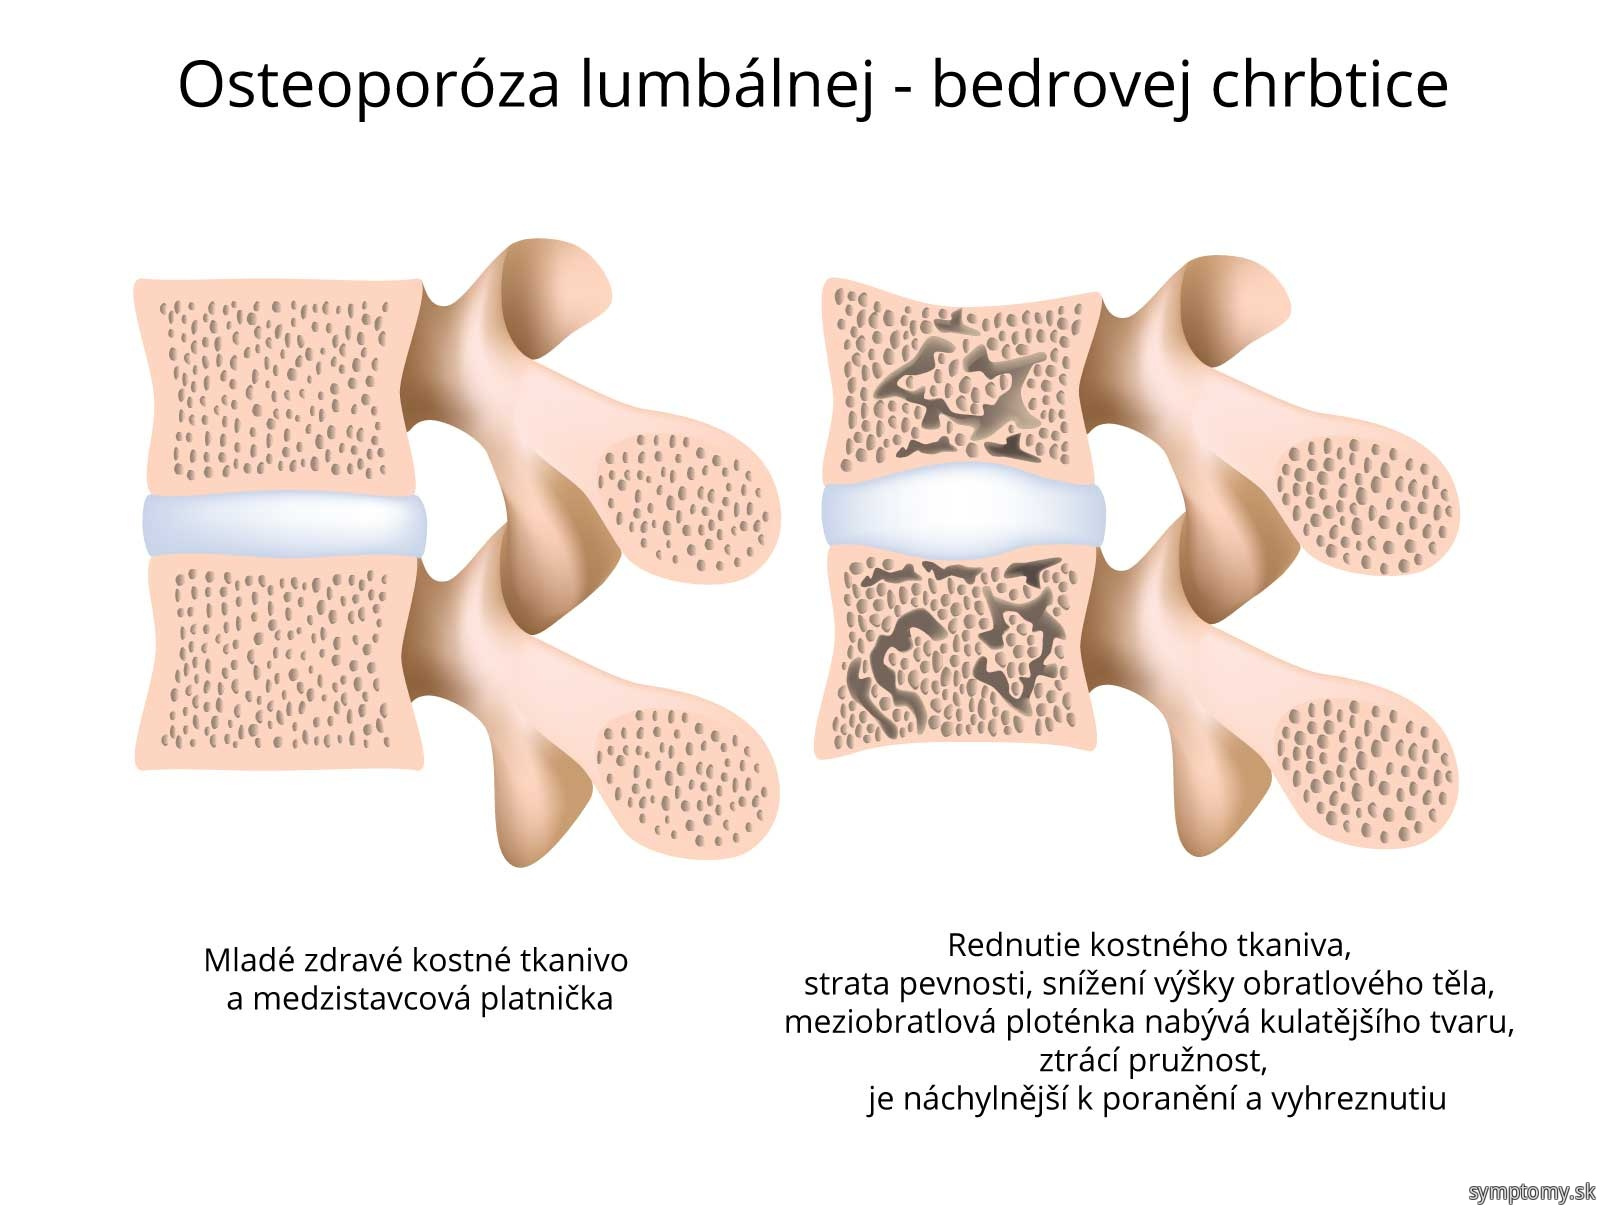 Osteoporóza lumbálnej-bedrovej chrbtice.jpg